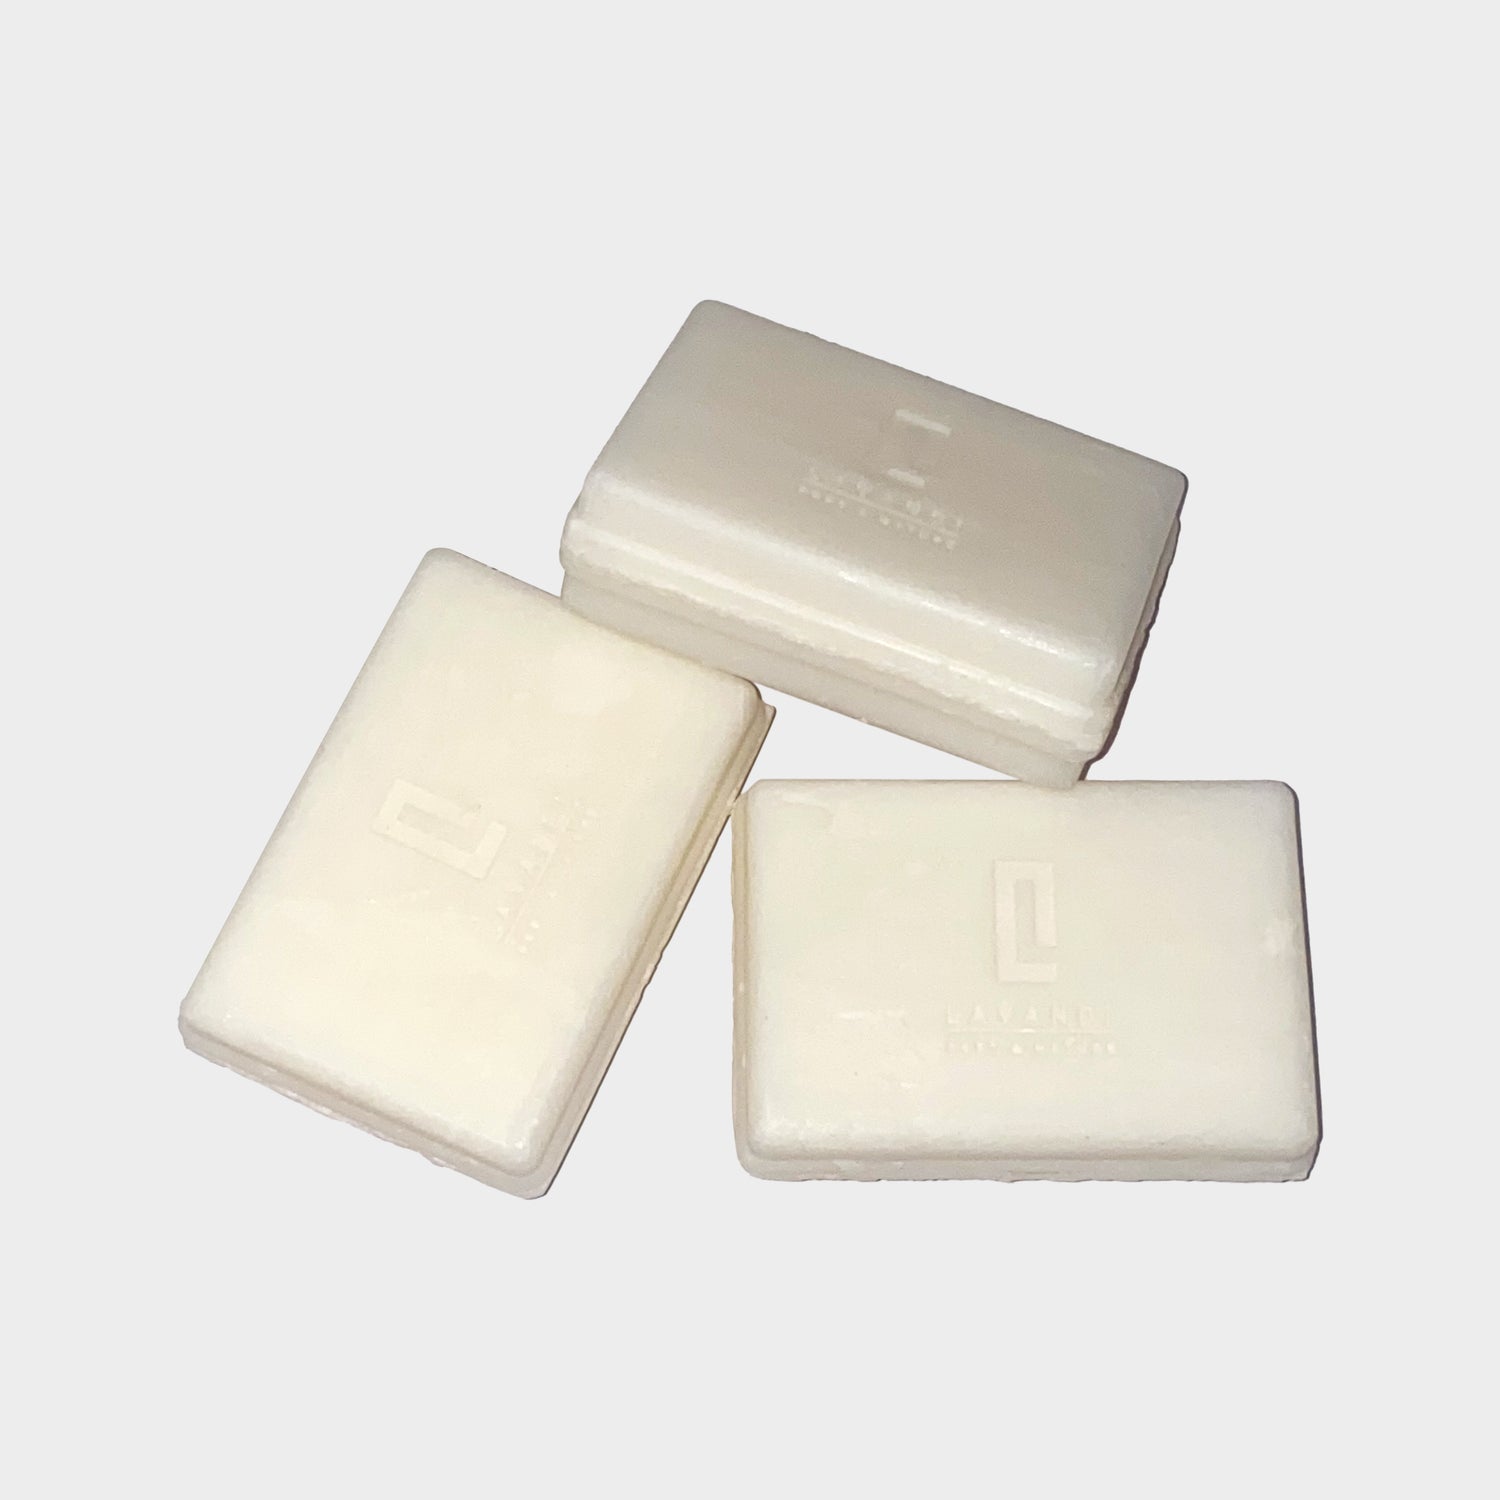 Naked Soap Bars- Zero Packaging